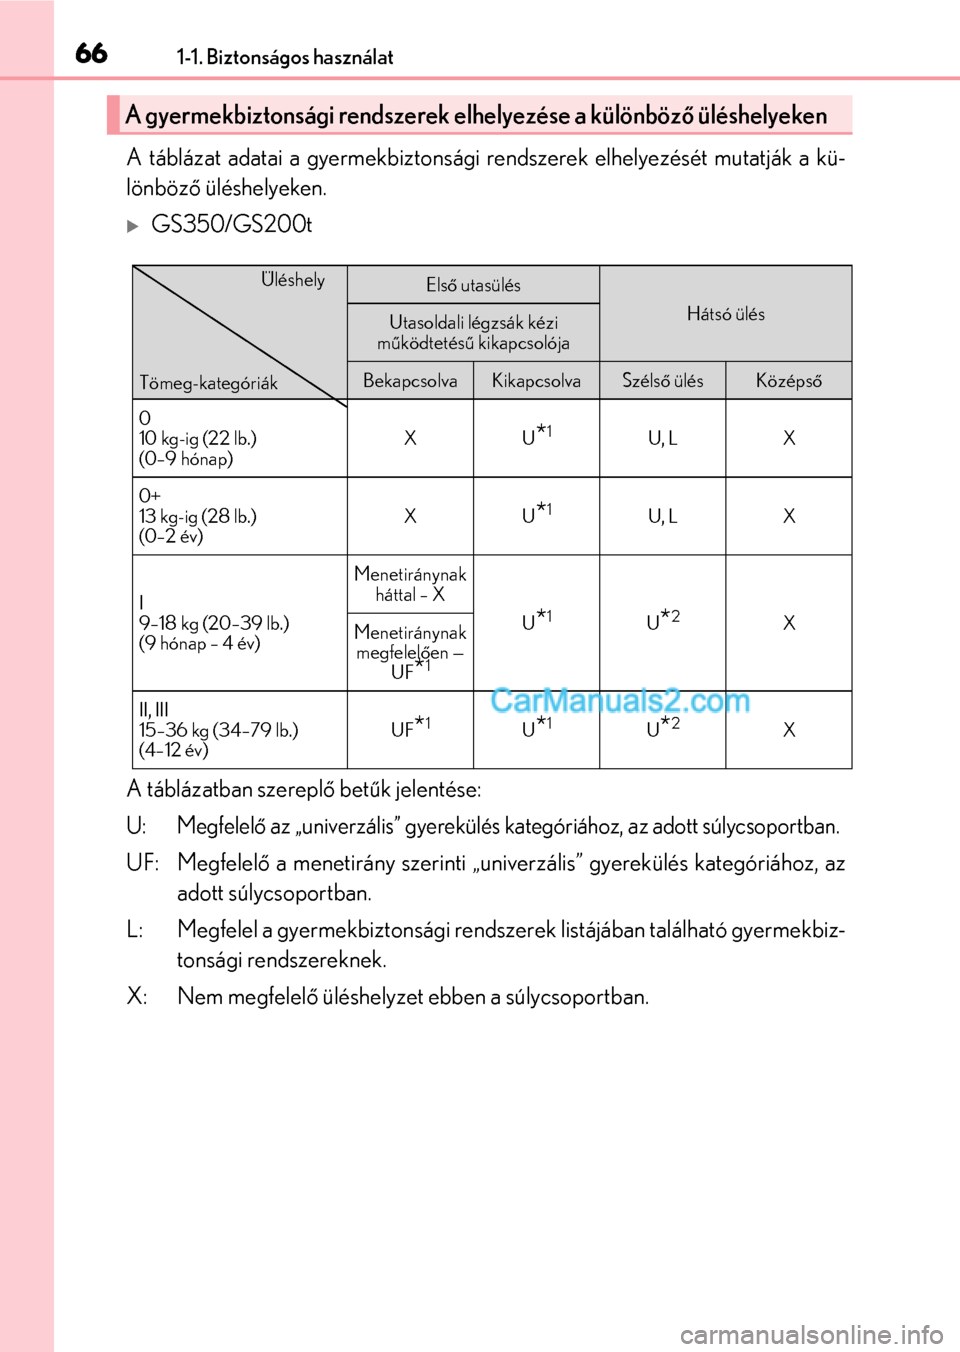 Lexus GS F 2015  Kezelési útmutató (in Hungarian) 661-1. Biztonságos használat
A táblázat adatai a gyermekbiztonsági rendszerek elhelyezését mutatják a kü-
lönböző üléshelyeken.
GS350/GS200t
A táblázatban szereplő betűk jelentés